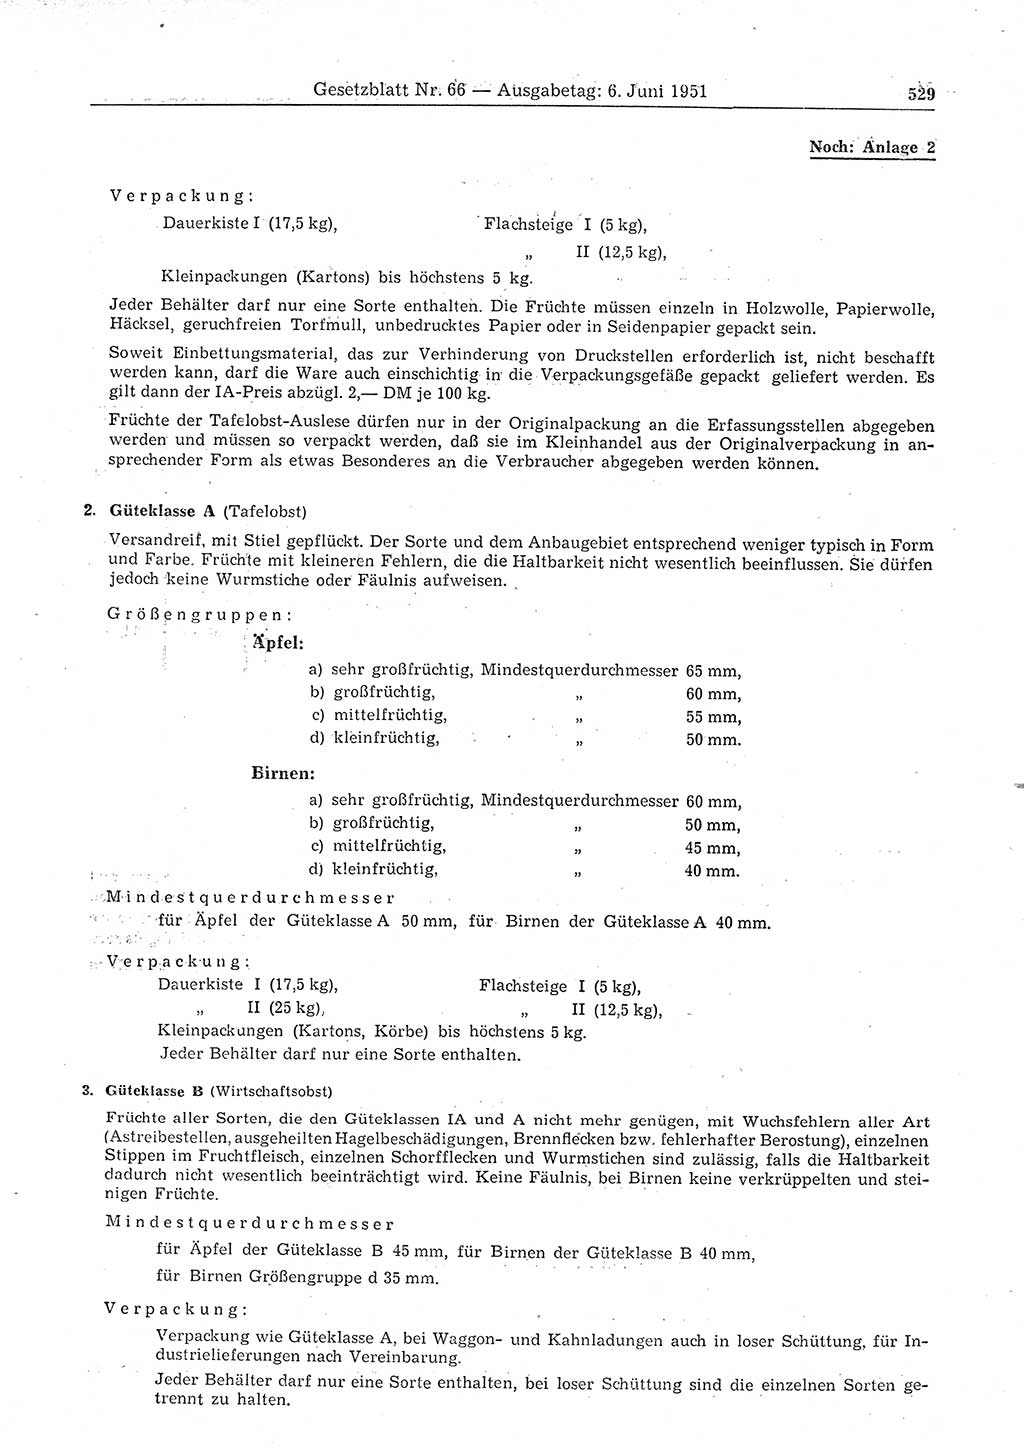 Gesetzblatt (GBl.) der Deutschen Demokratischen Republik (DDR) 1951, Seite 529 (GBl. DDR 1951, S. 529)